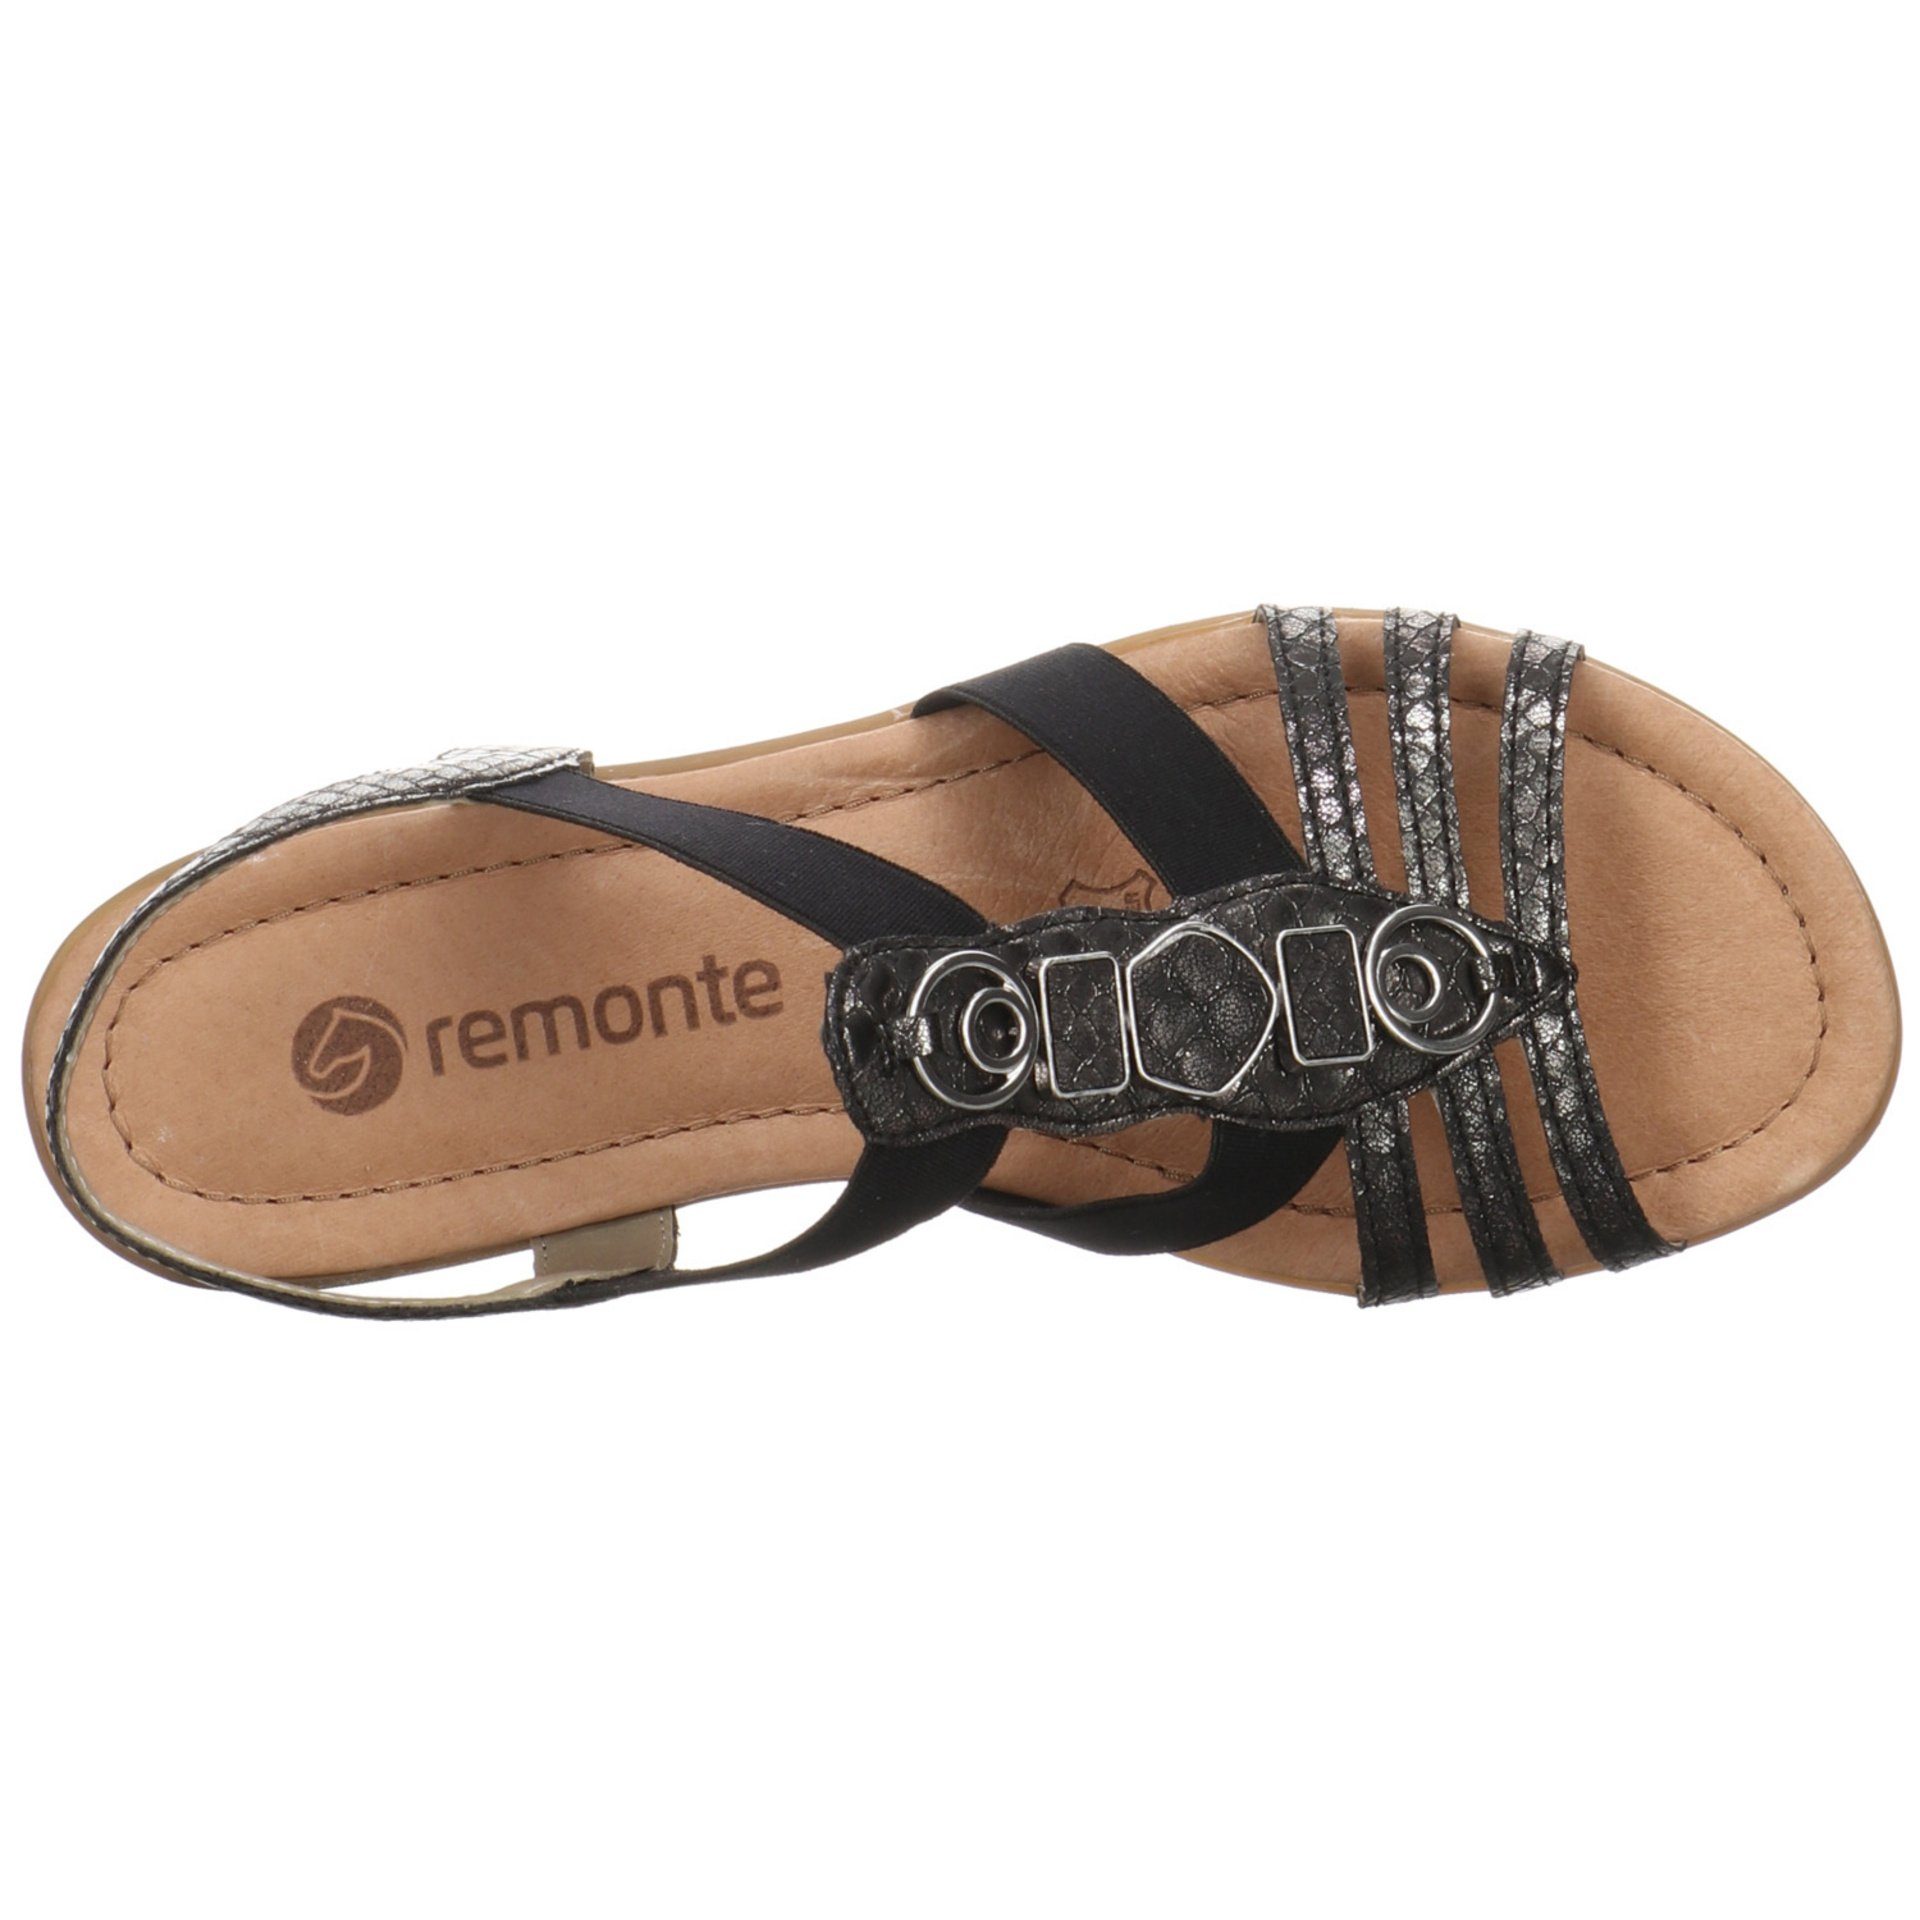 Remonte Damen Sandalen Fußbett Sandale Synthetikkombination Bequem Freizeit schwarz/schwarz Sandale